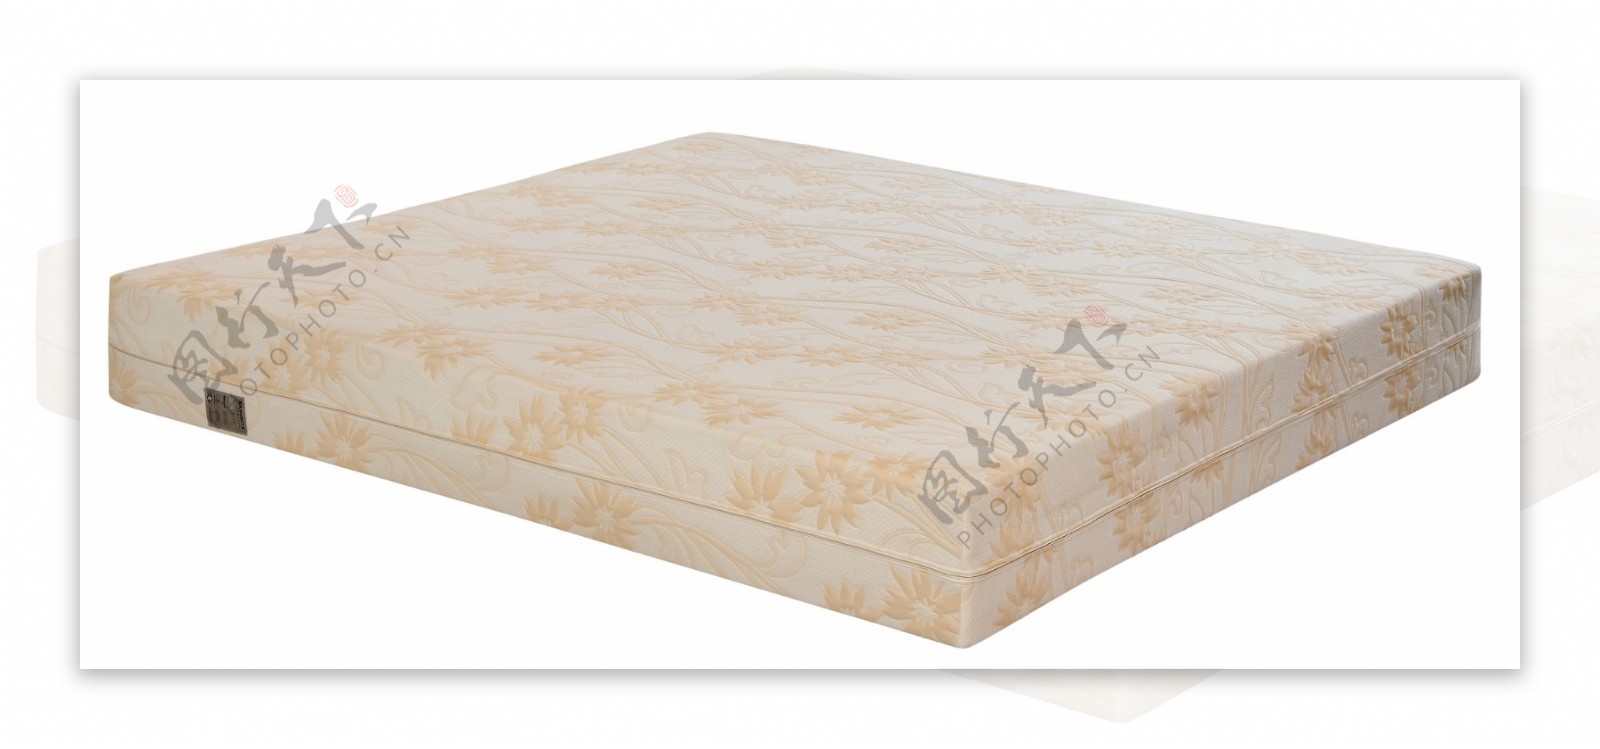 高级床垫乳胶床垫图片